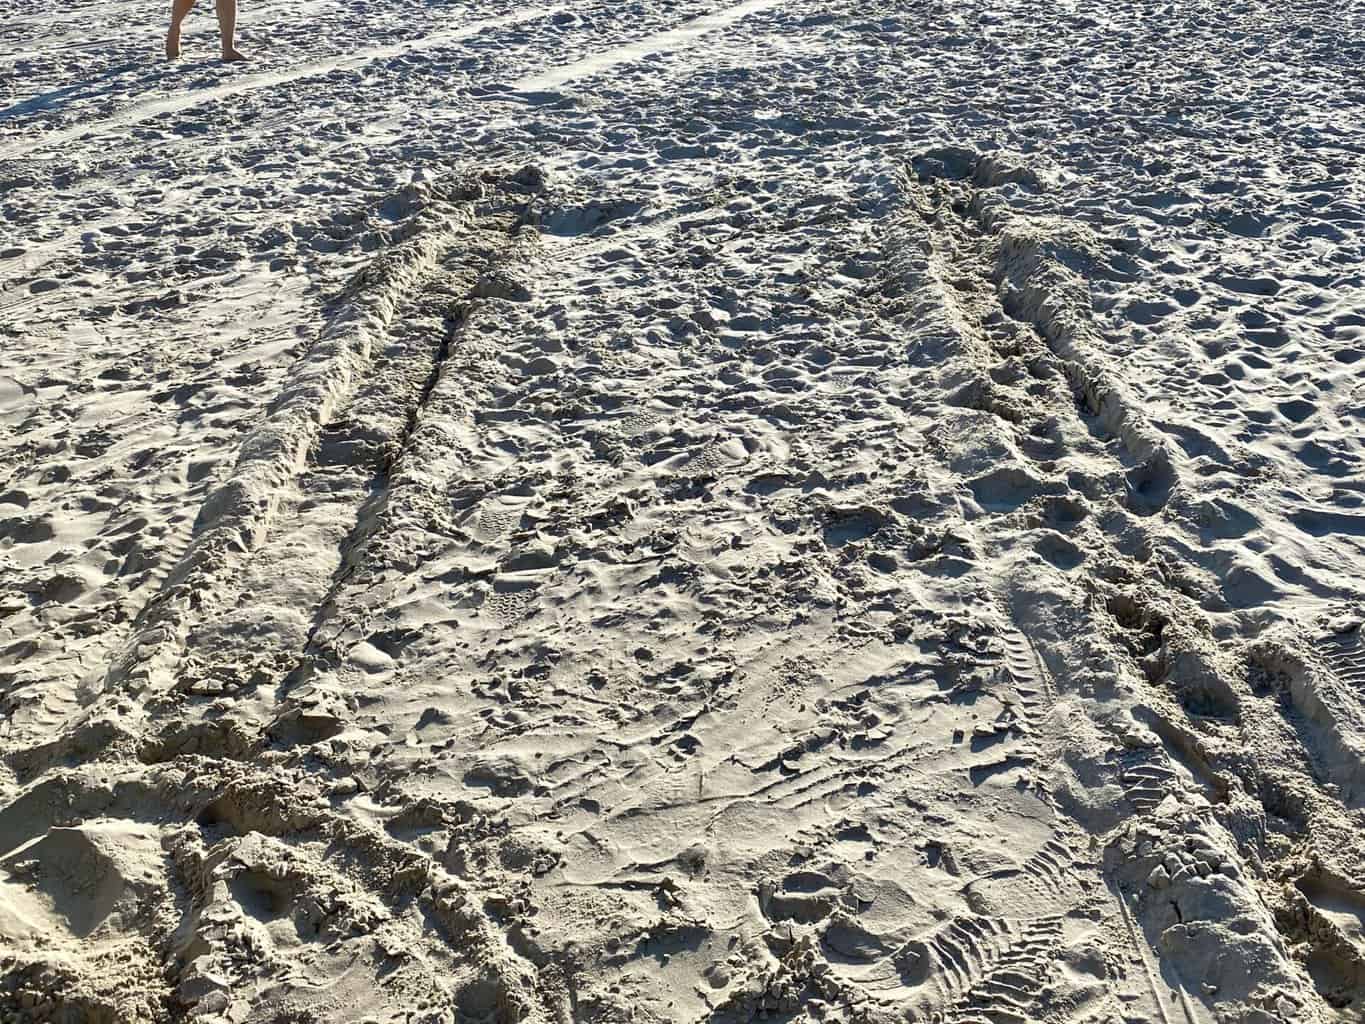 , Wohnmobil am Strand im Sand stecken bleiben